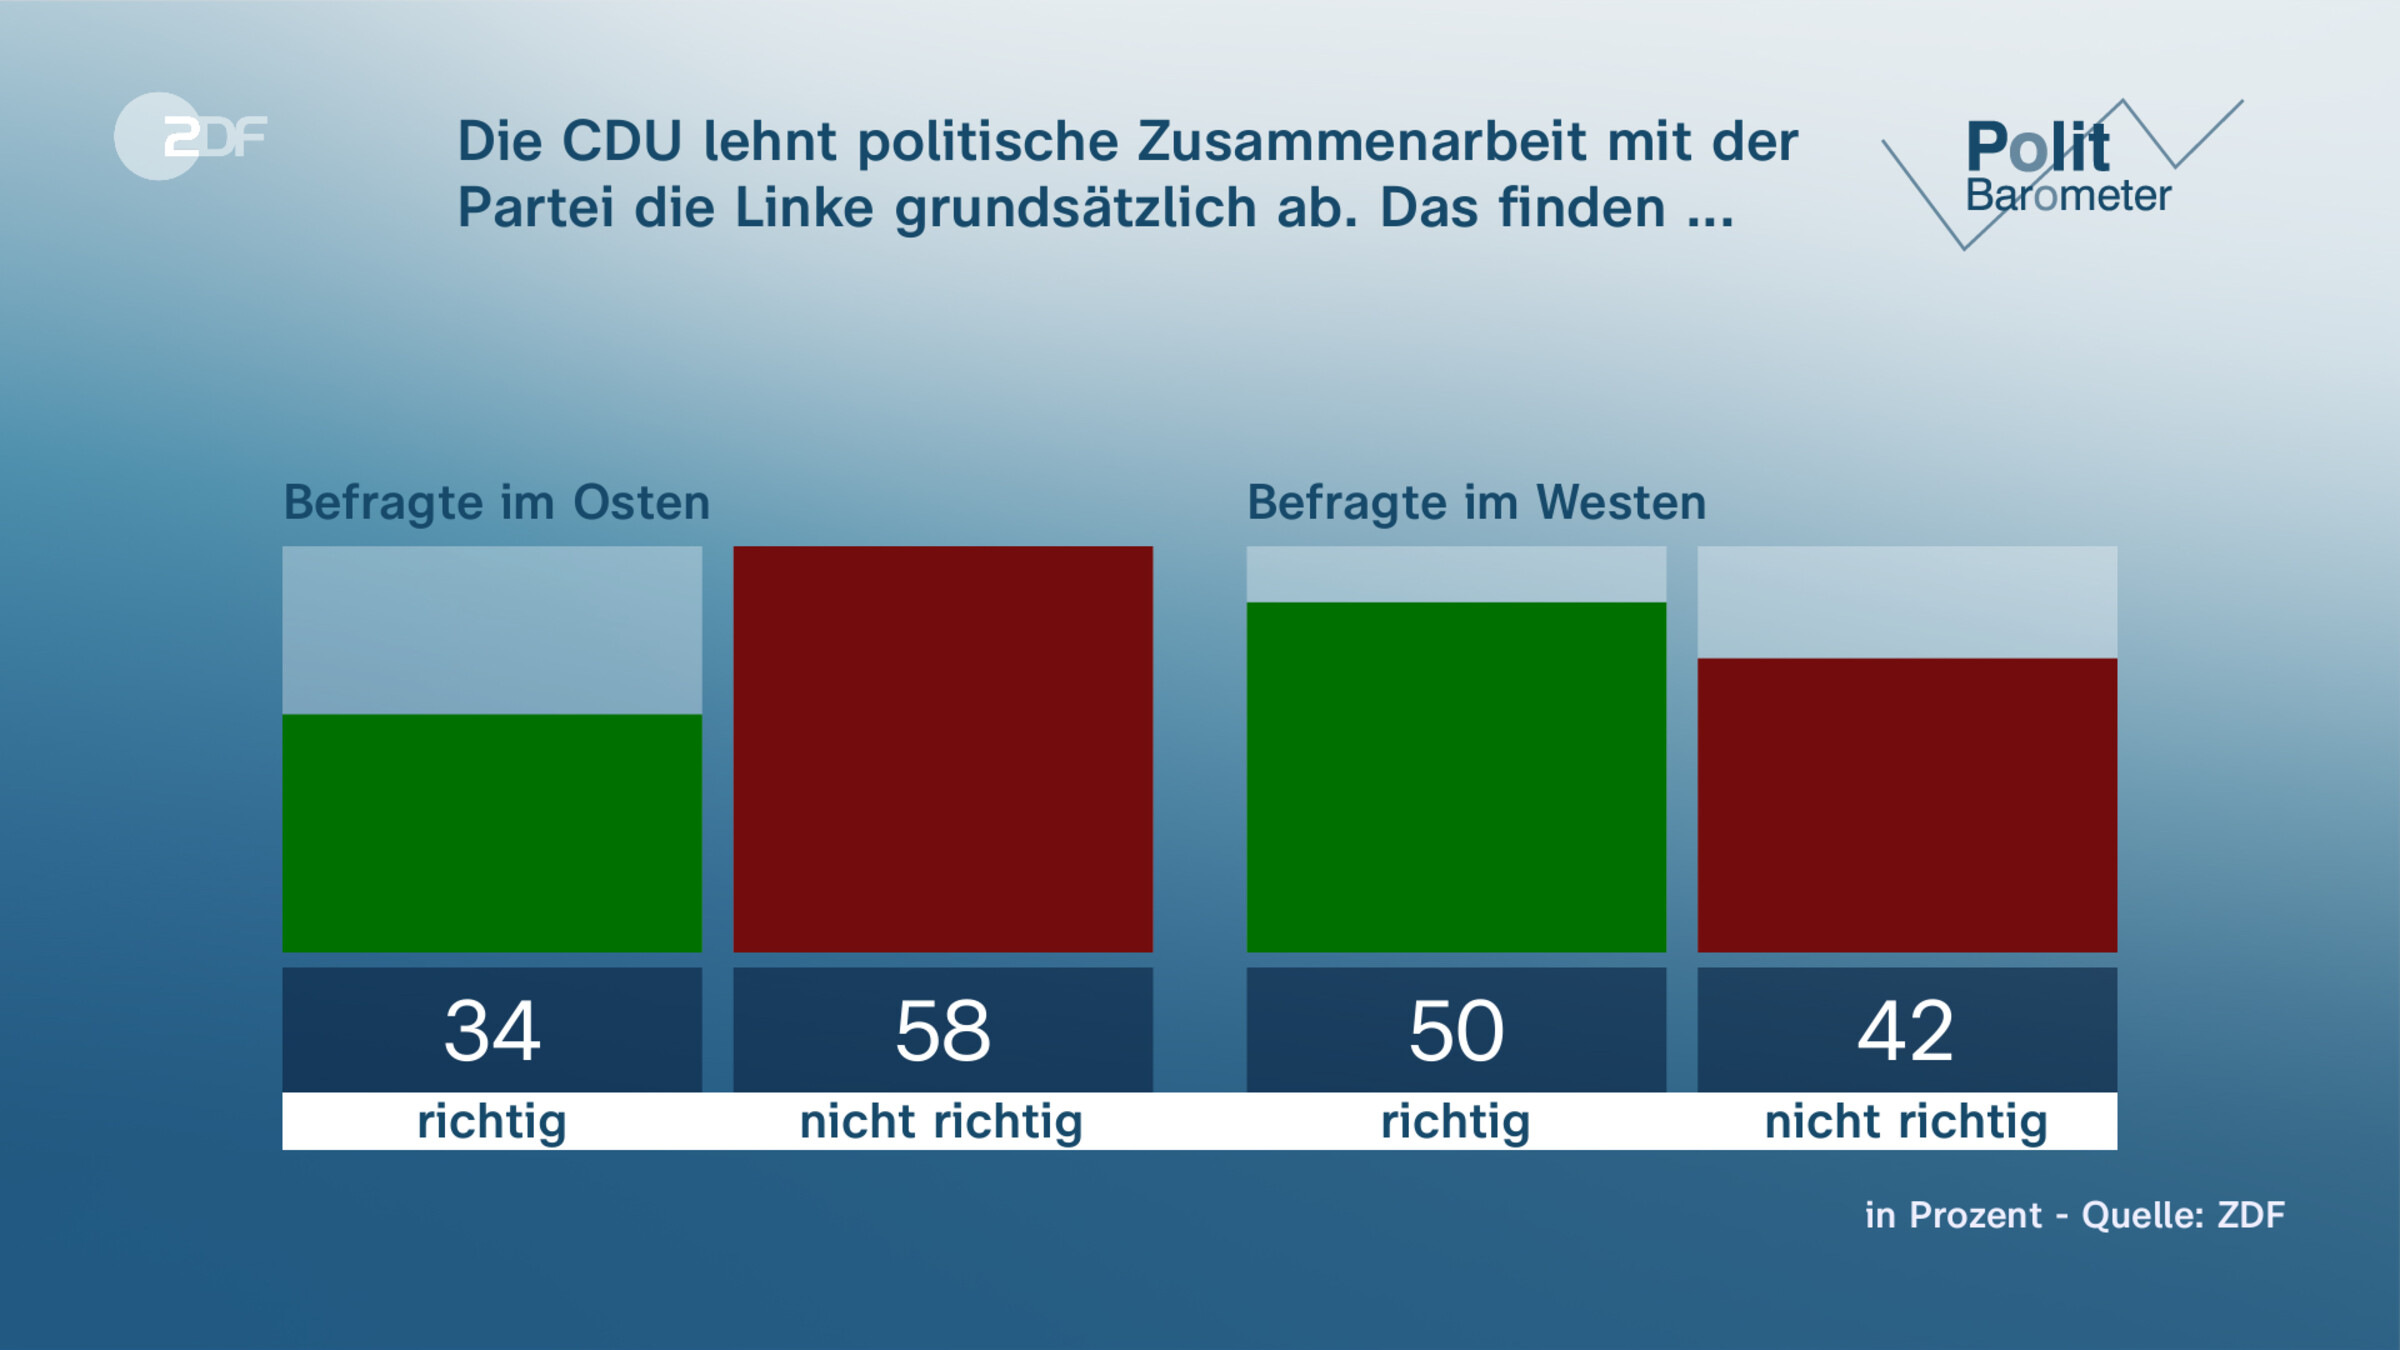 Die CDU lehnt politische Zusammenarbeit mit der Partei die Linke grundsätzlich ab. Das finden ...